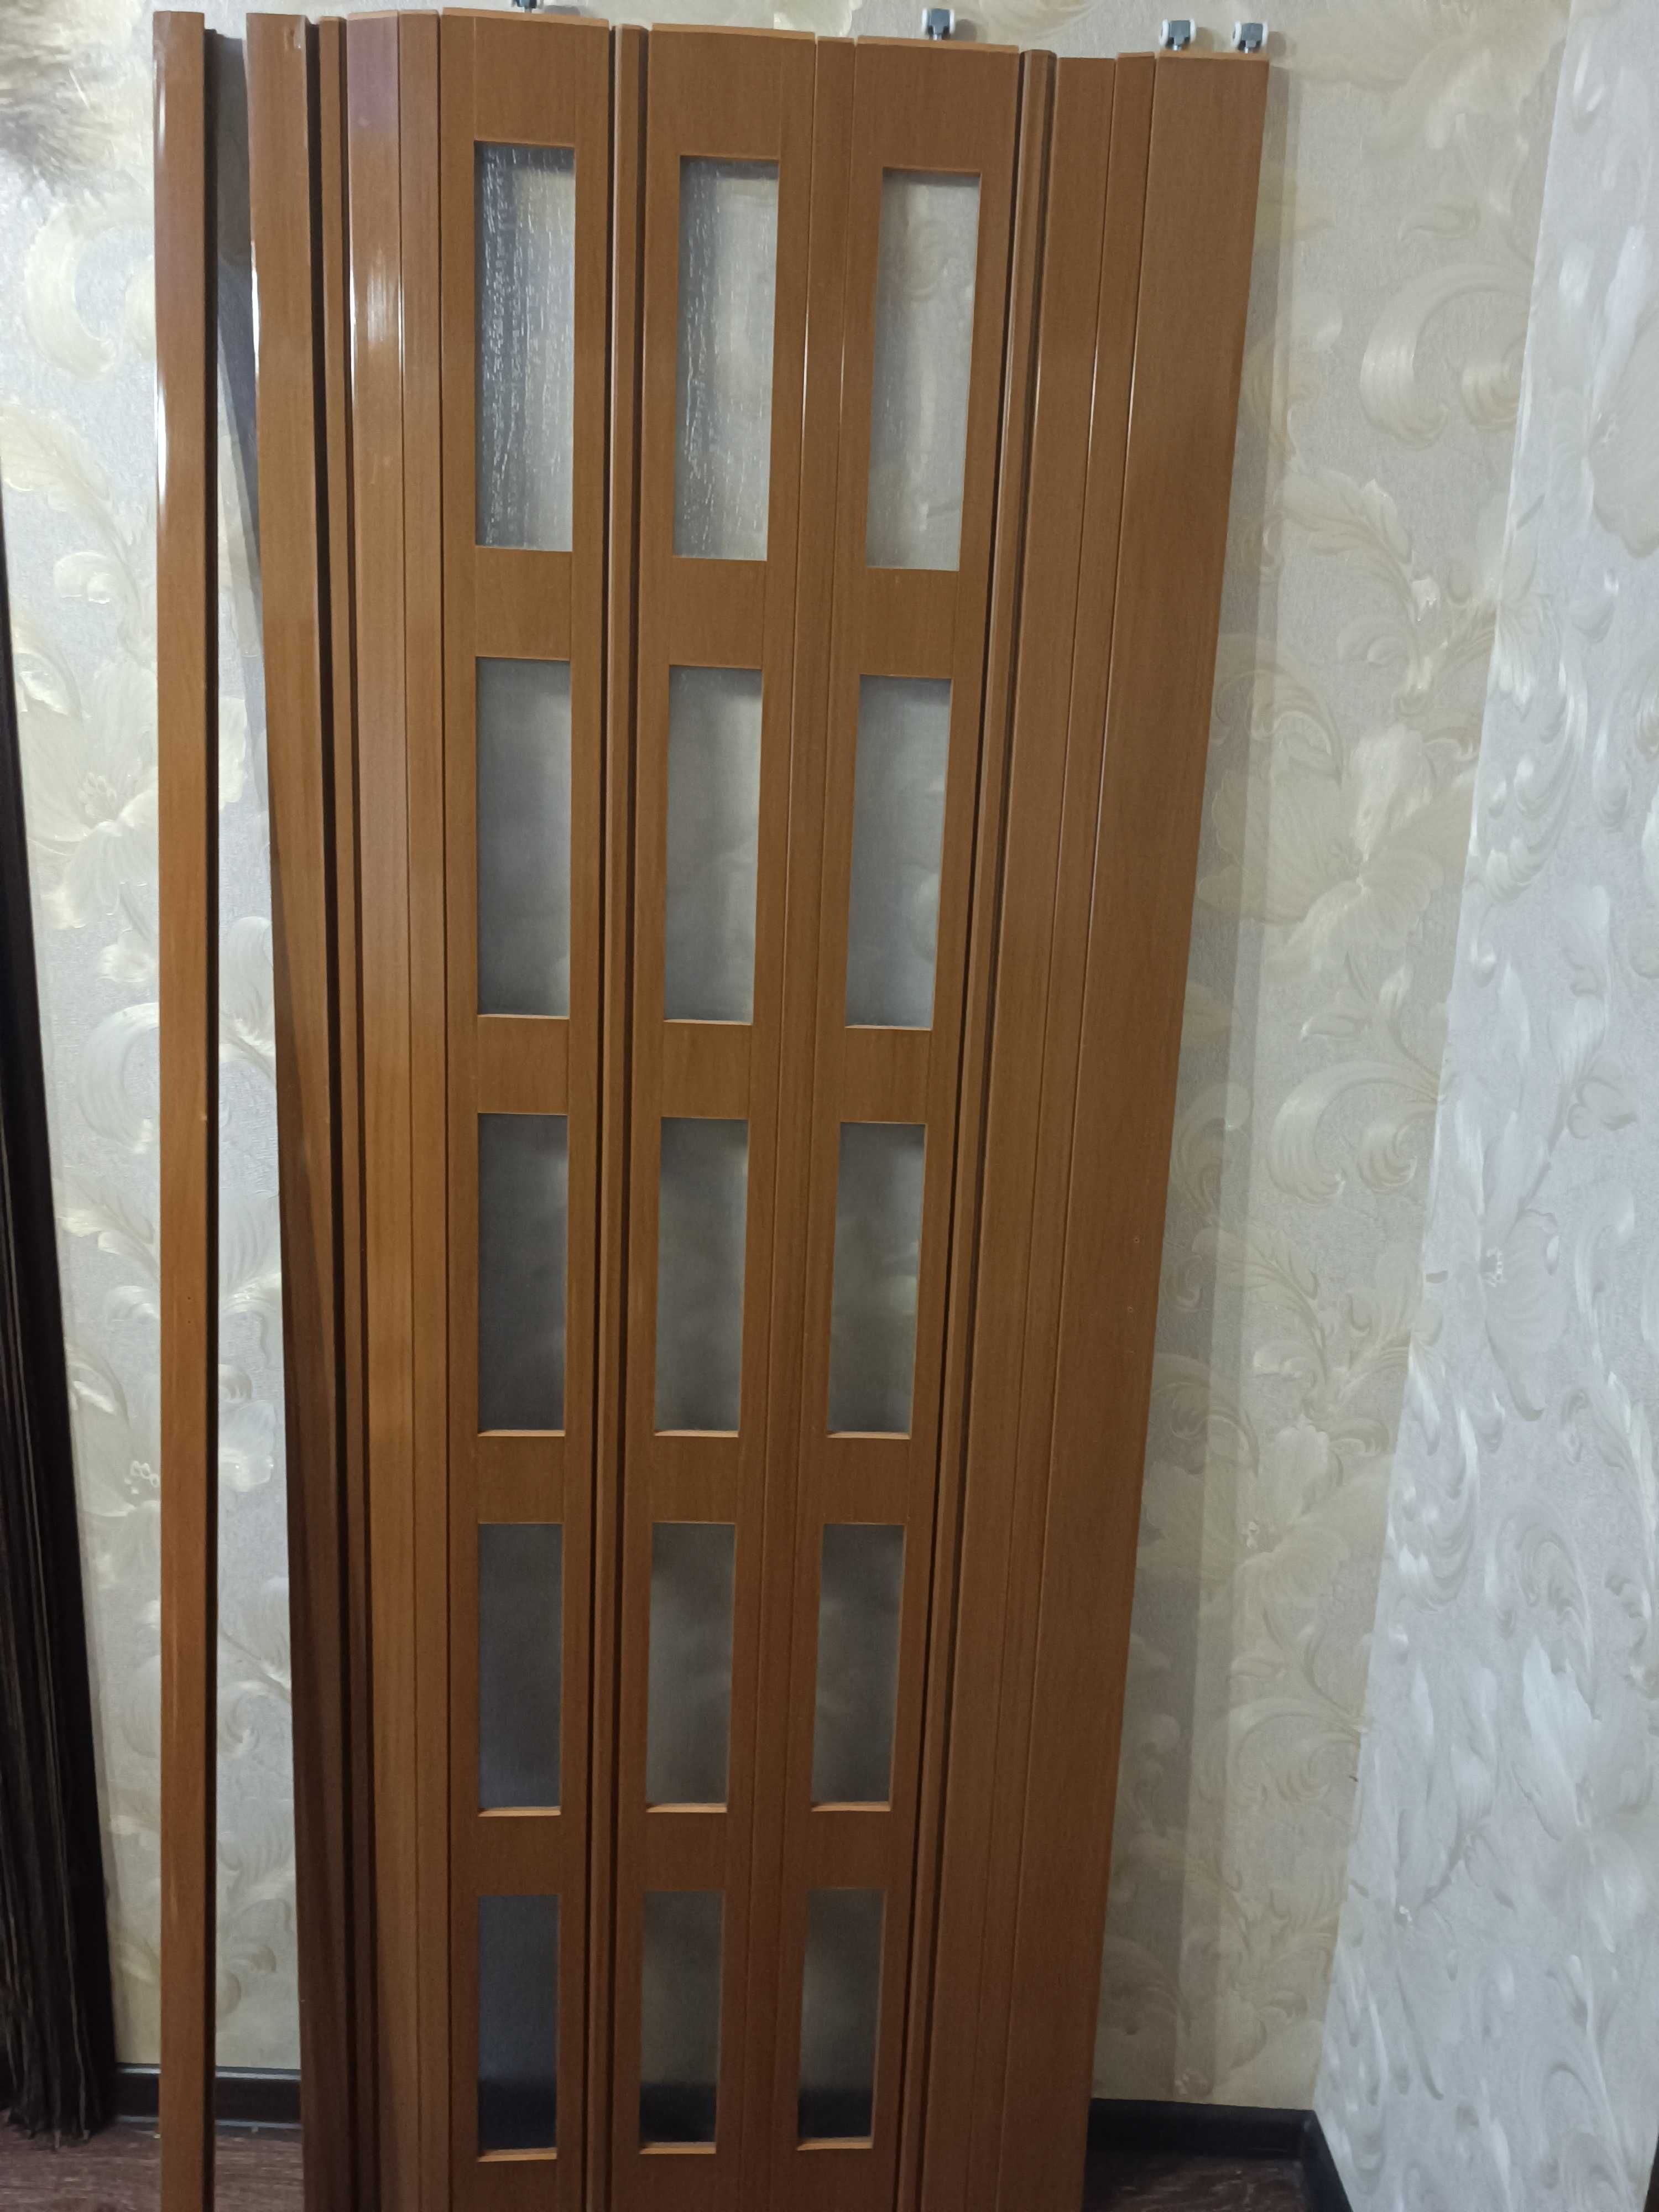 Двери межкомнатные ПВХ гармошкой с остеклением  1000 грн.шт.